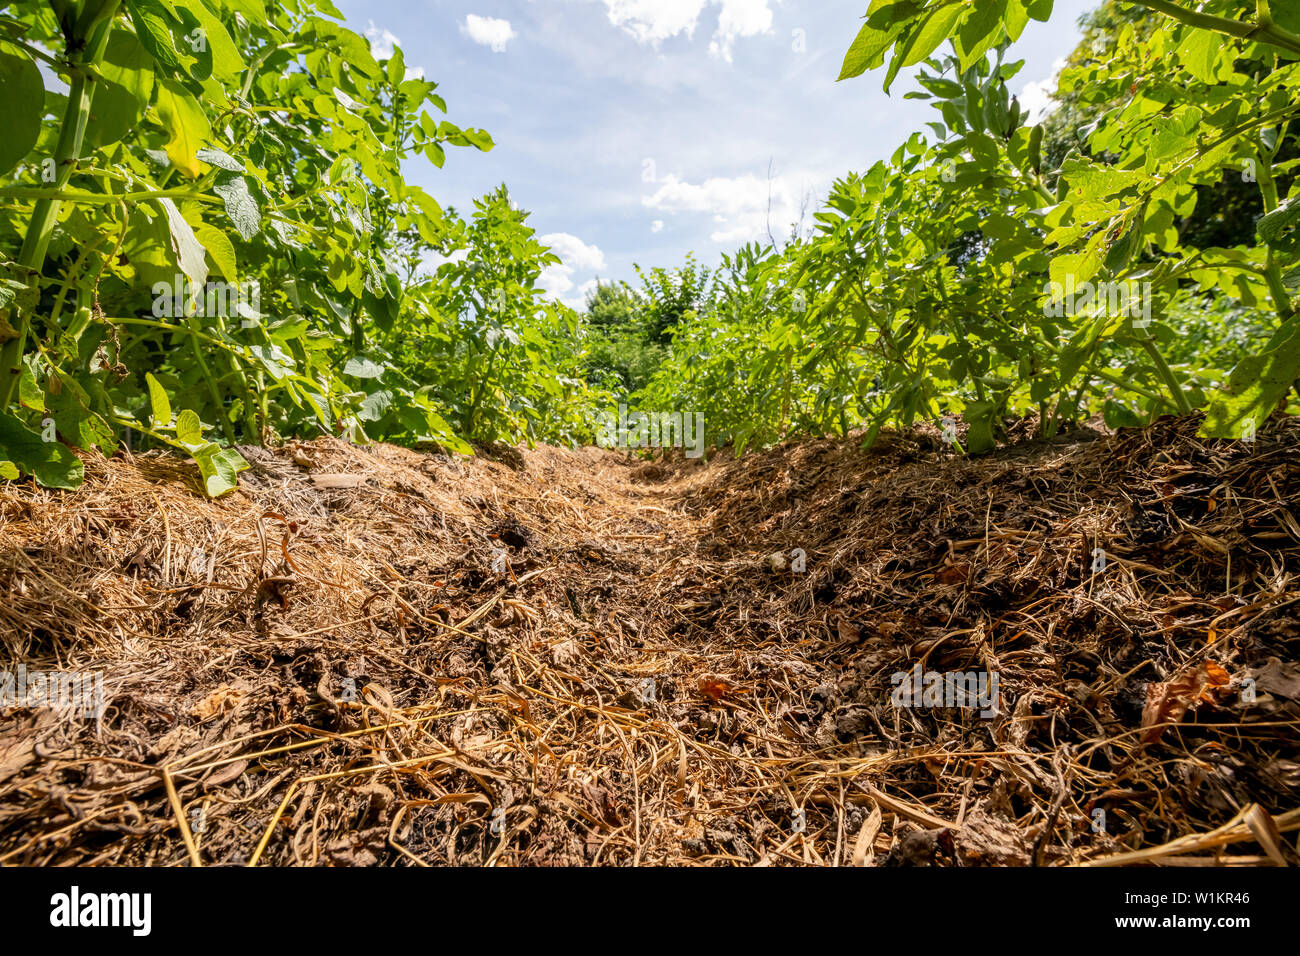 Description: Vegetable garden agriculture potato beds Stock Photo